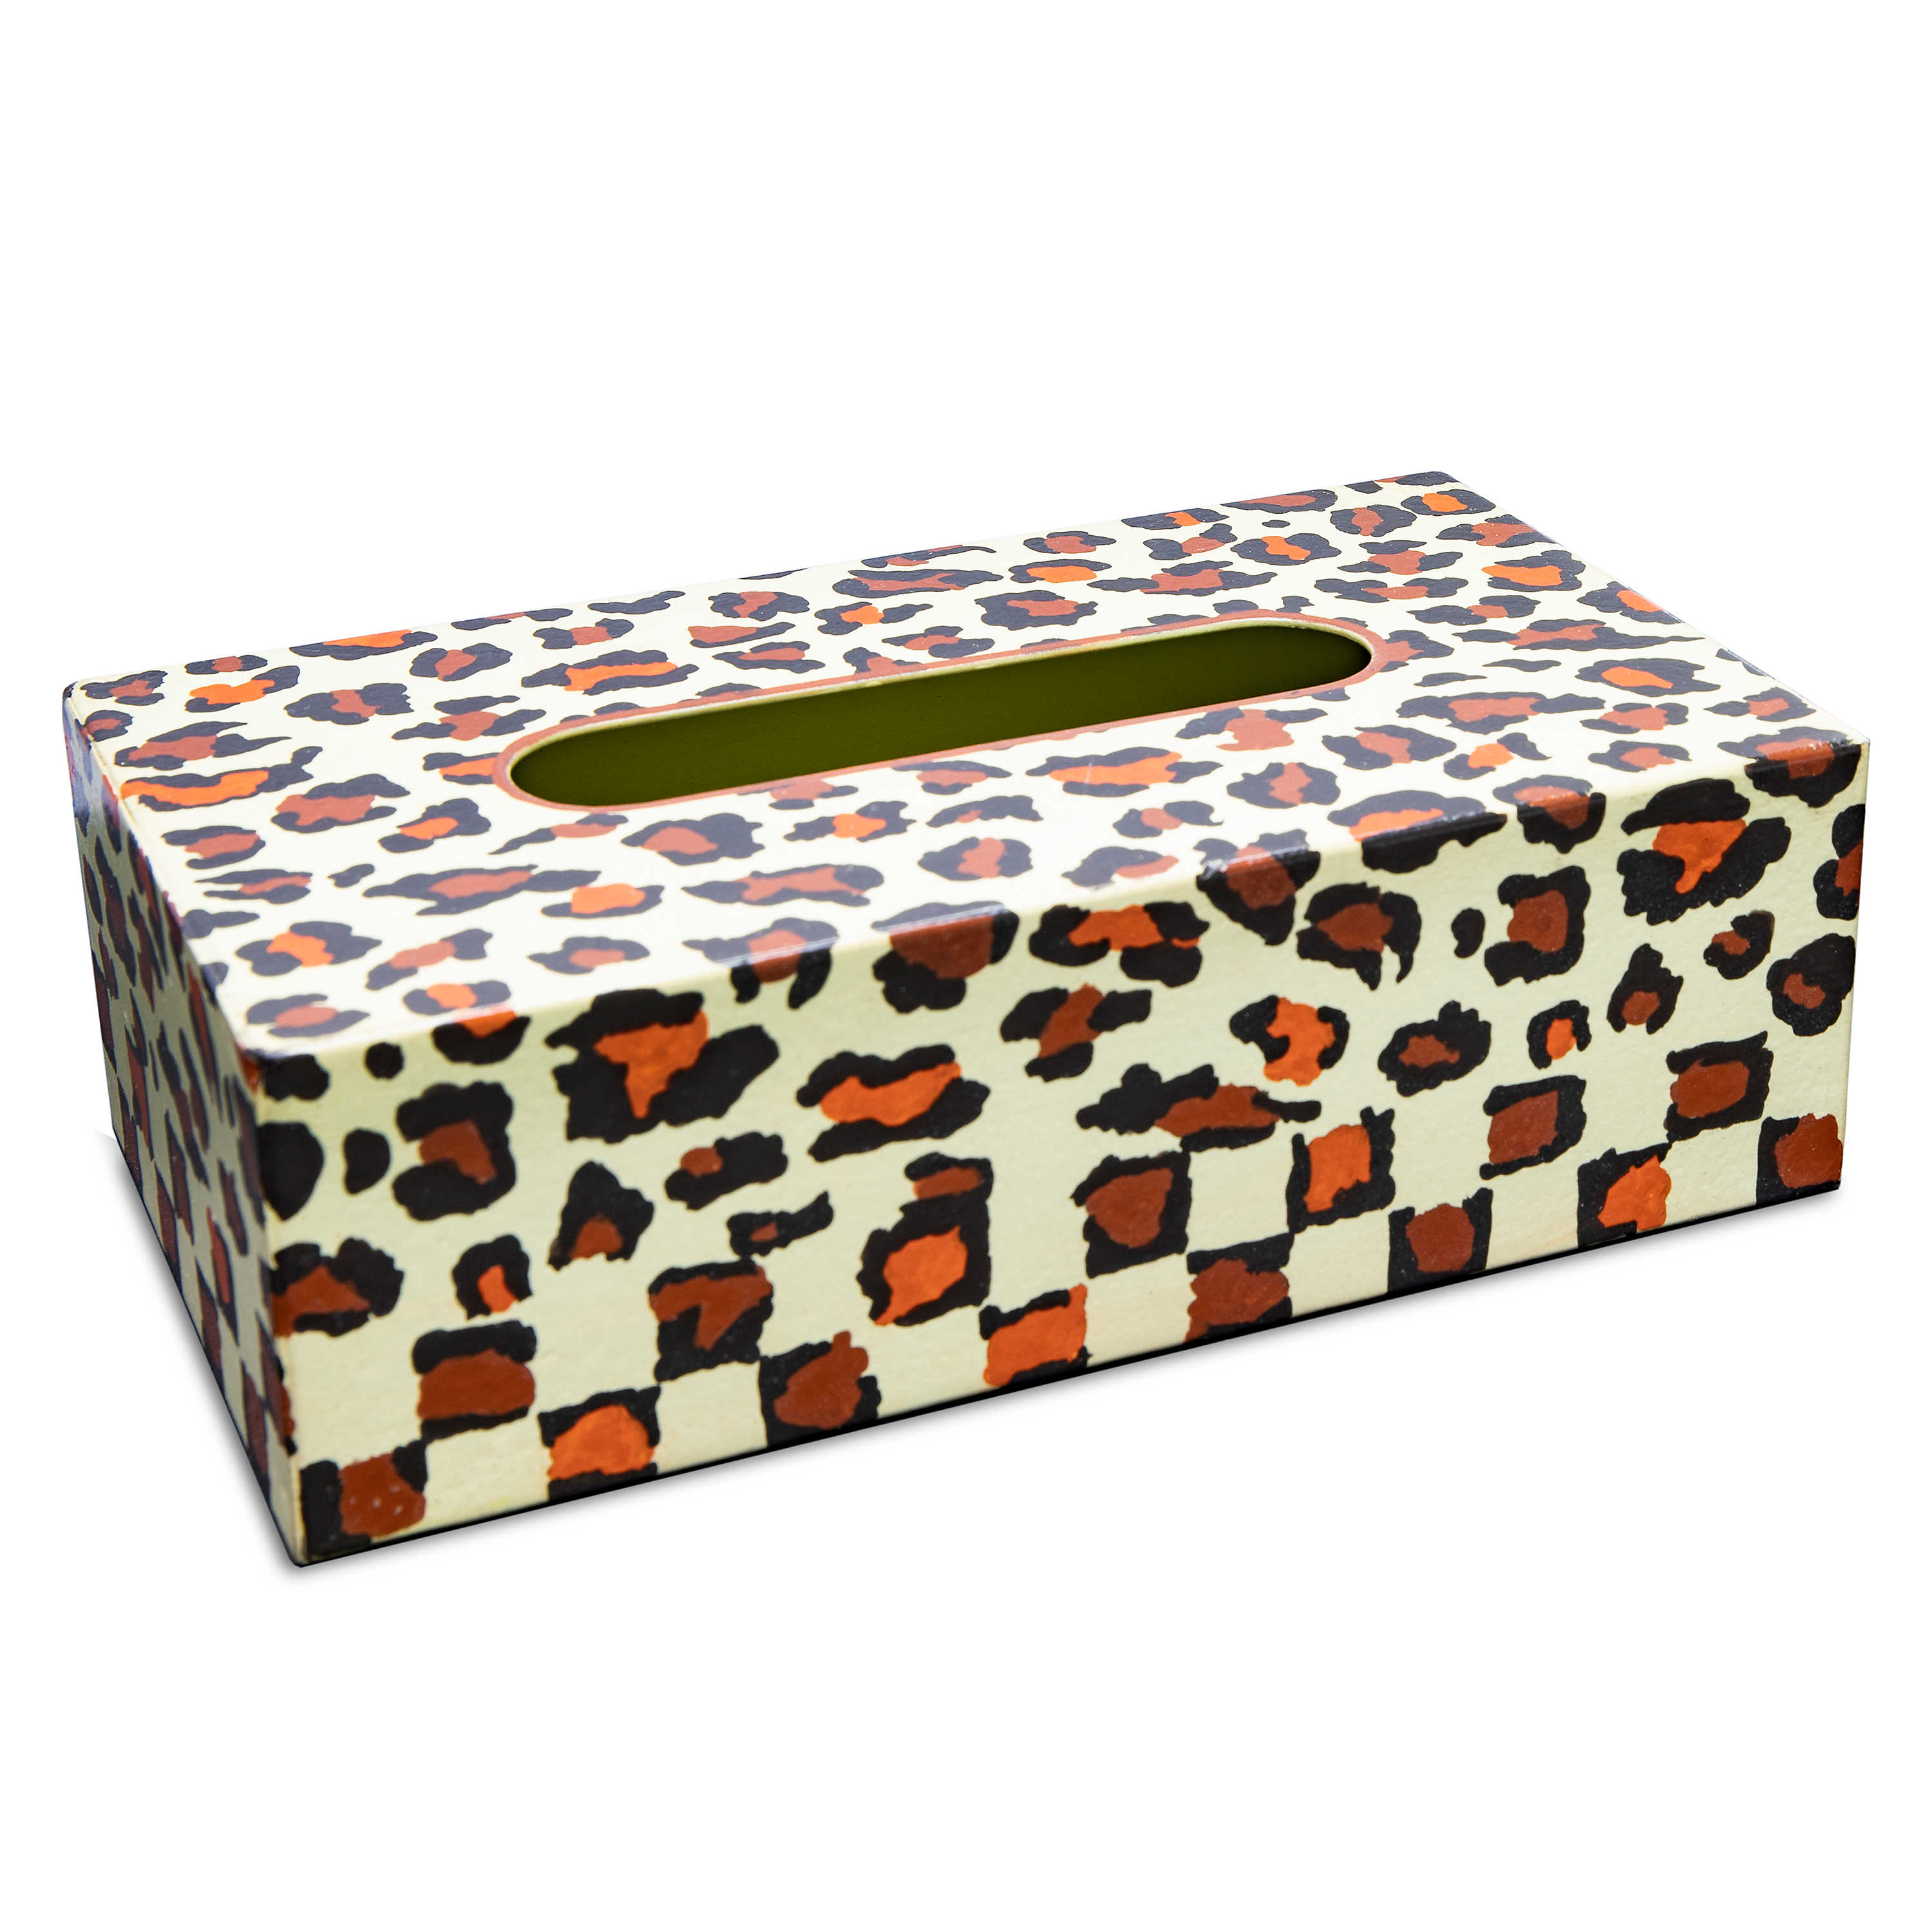 Serengeti Standard Tissue Box Holder mackenzie-childs Panama 0